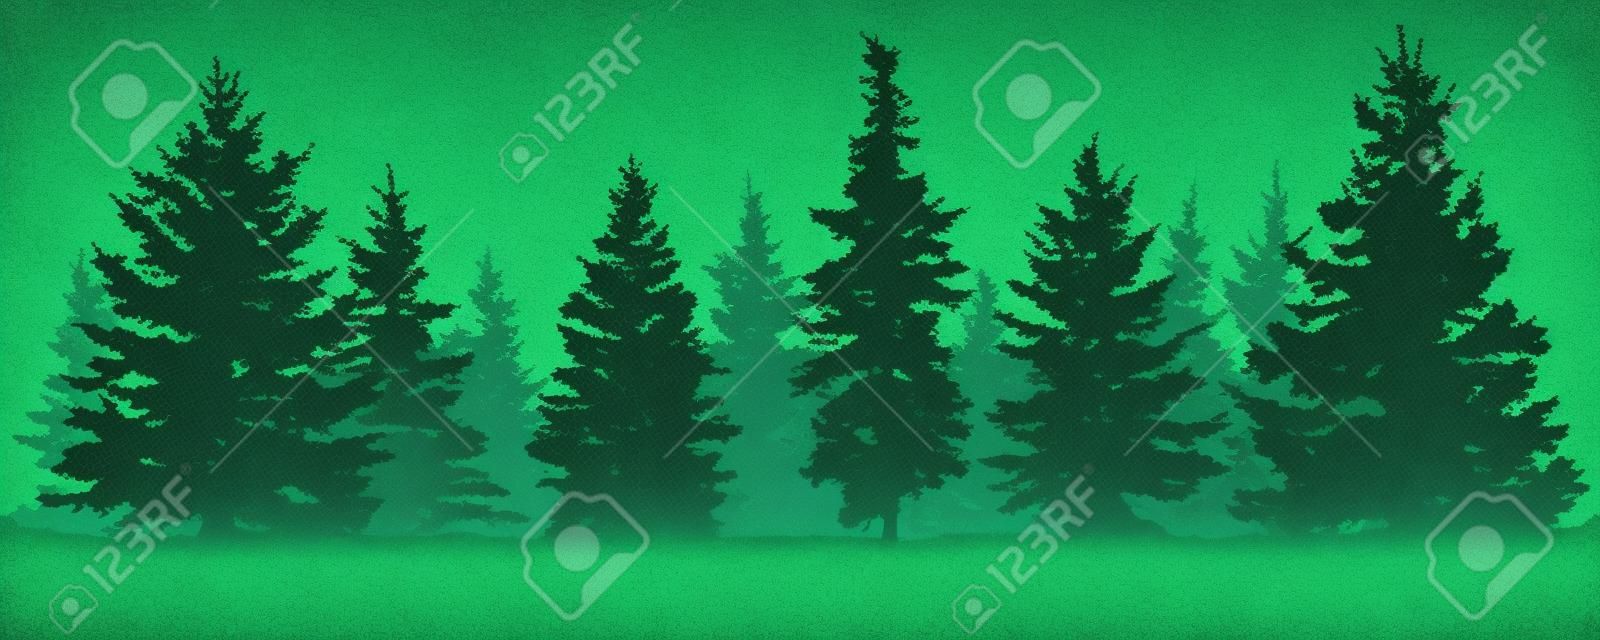 Bosque de abetos silueta. Abeto verde conífero. Vector sobre fondo blanco